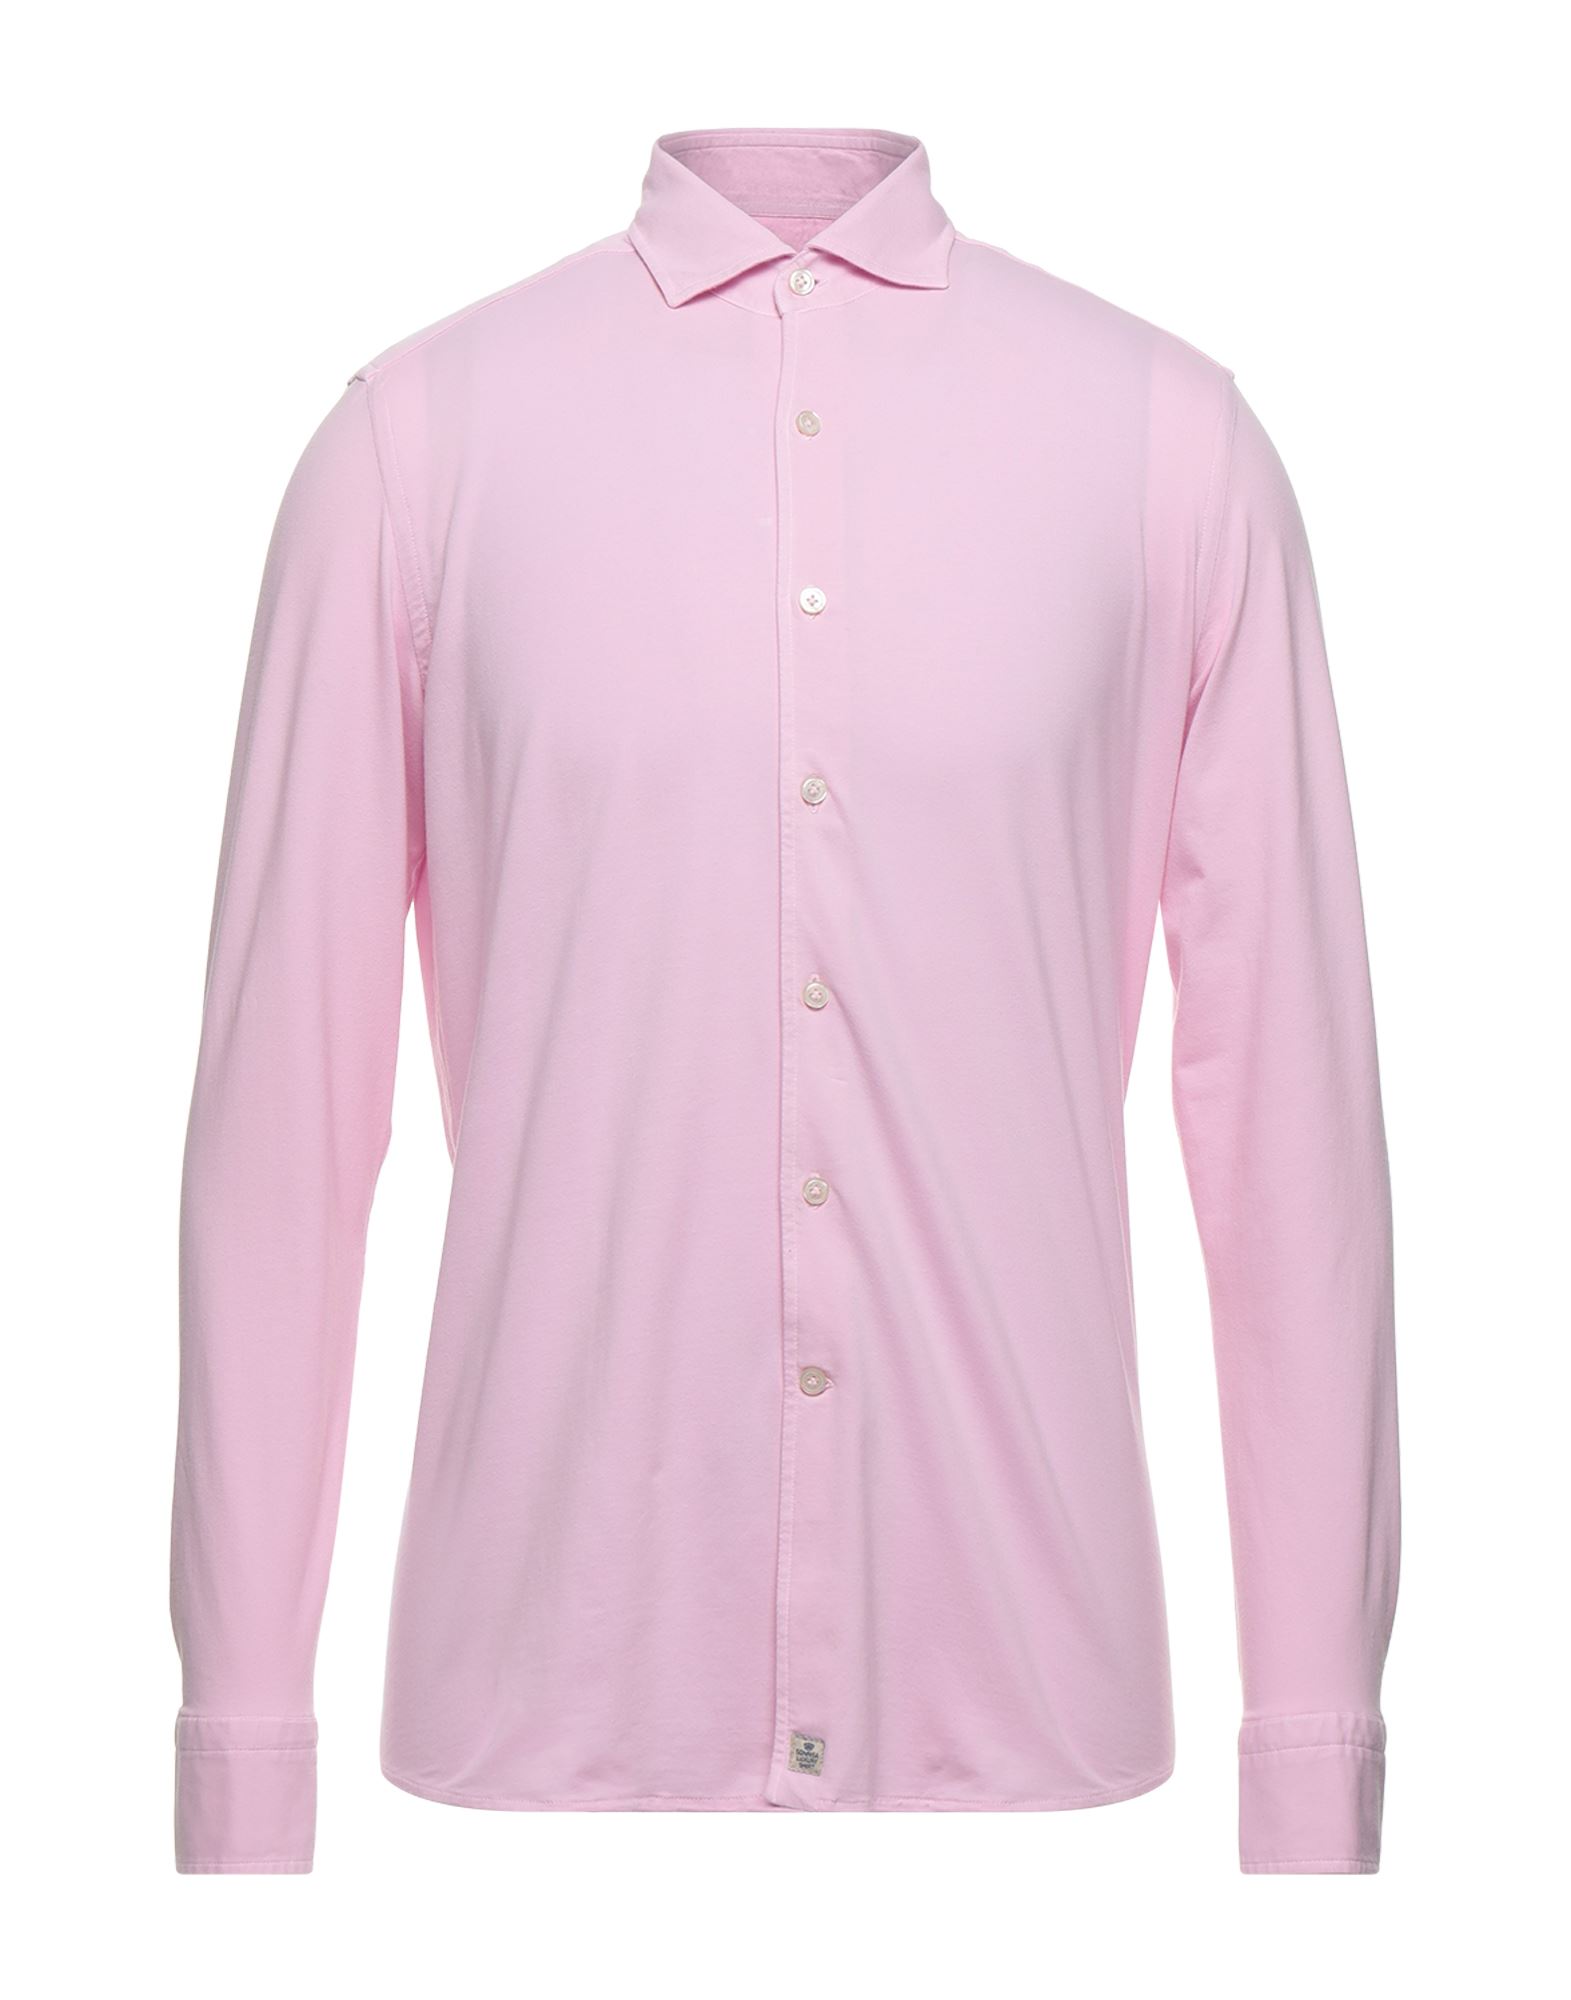 Sonrisa Shirts In Pink